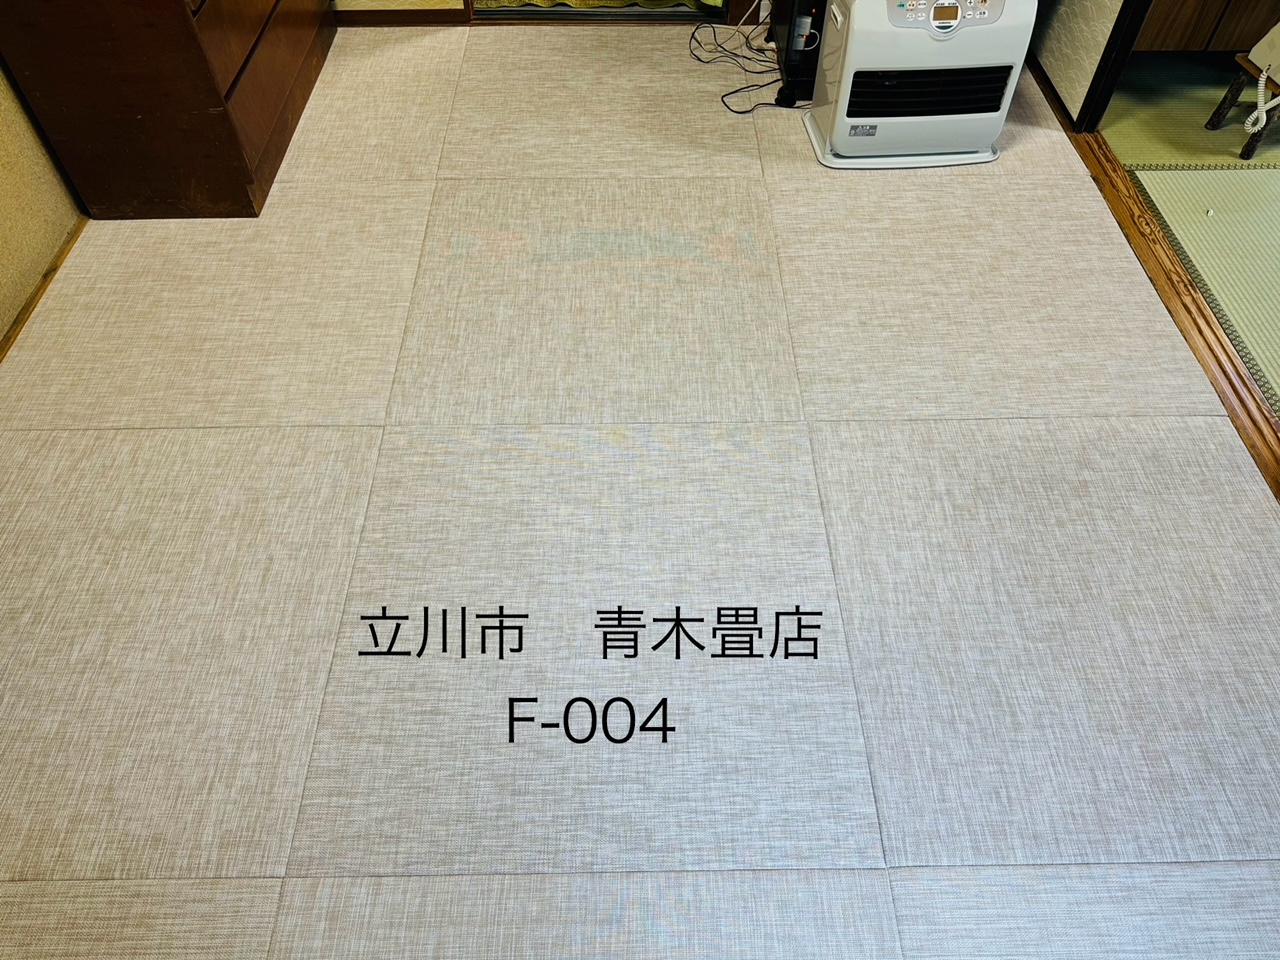 施工したお客様からご近所にお住いのお客様をご紹介してくださいました。熊本県産畳表で畳新調とReFace半畳新調。東京都日の出町